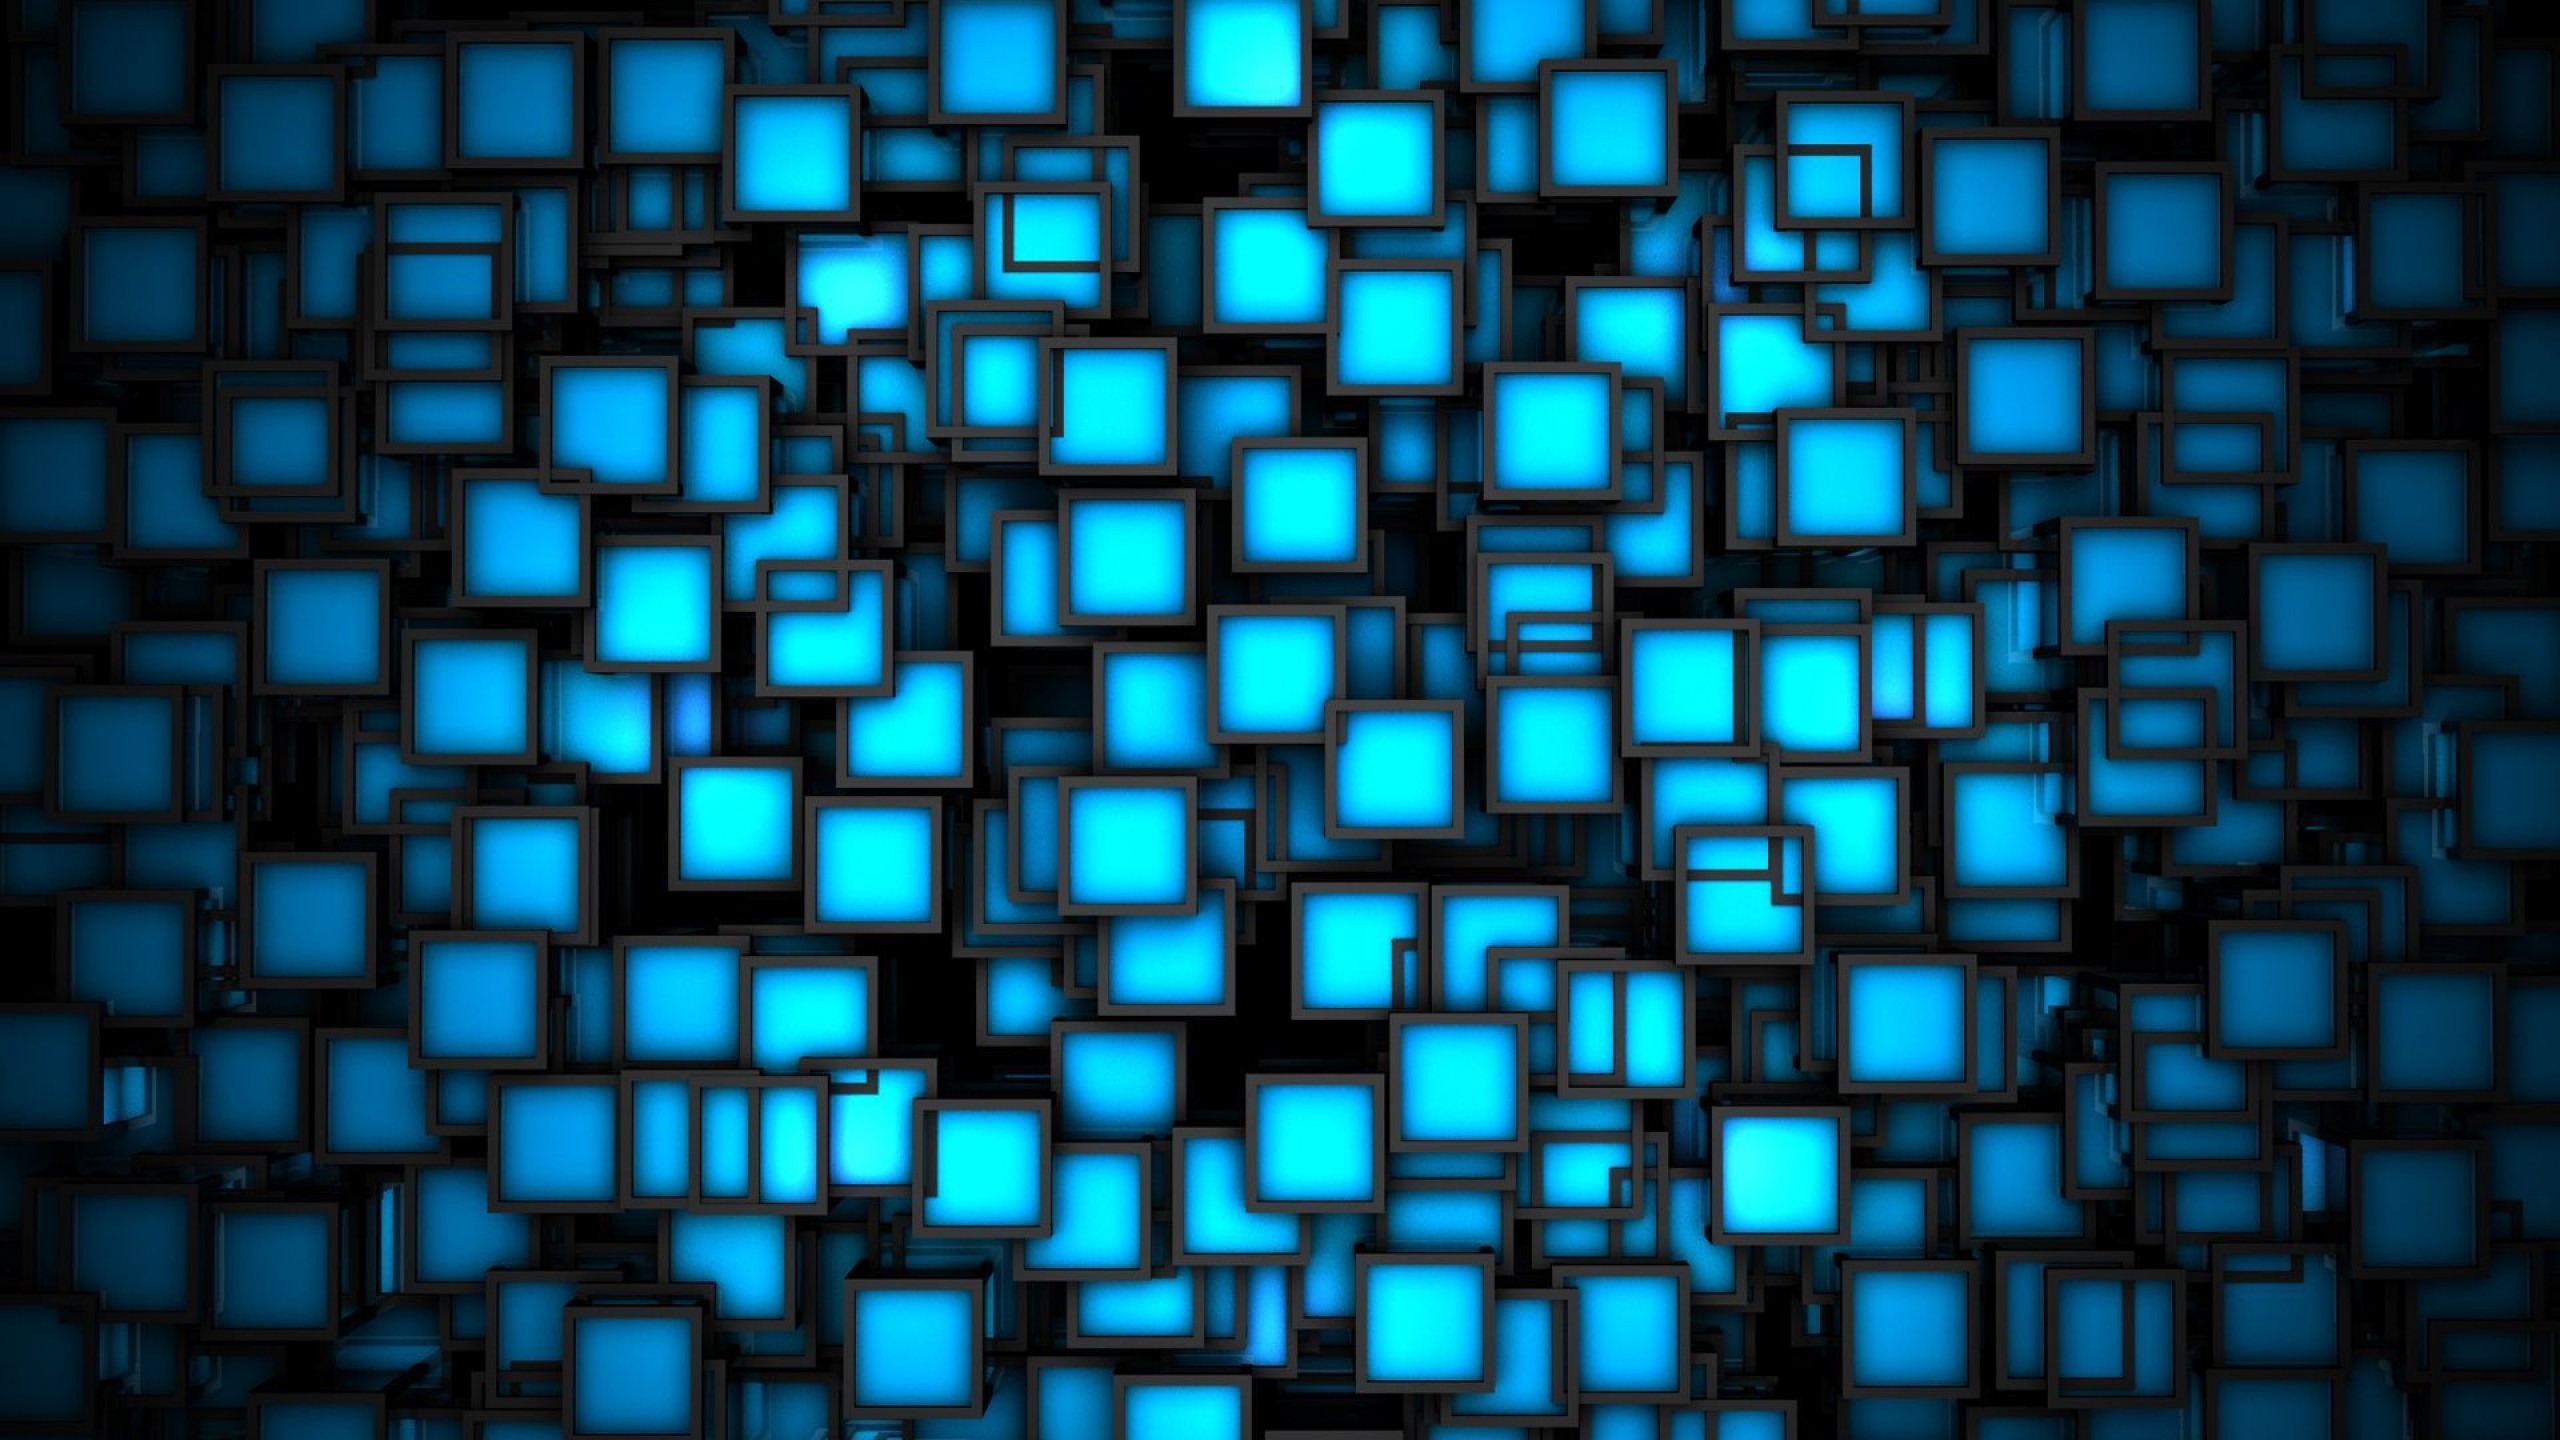 HD Blue Wallpapers | PixelsTalk.Net